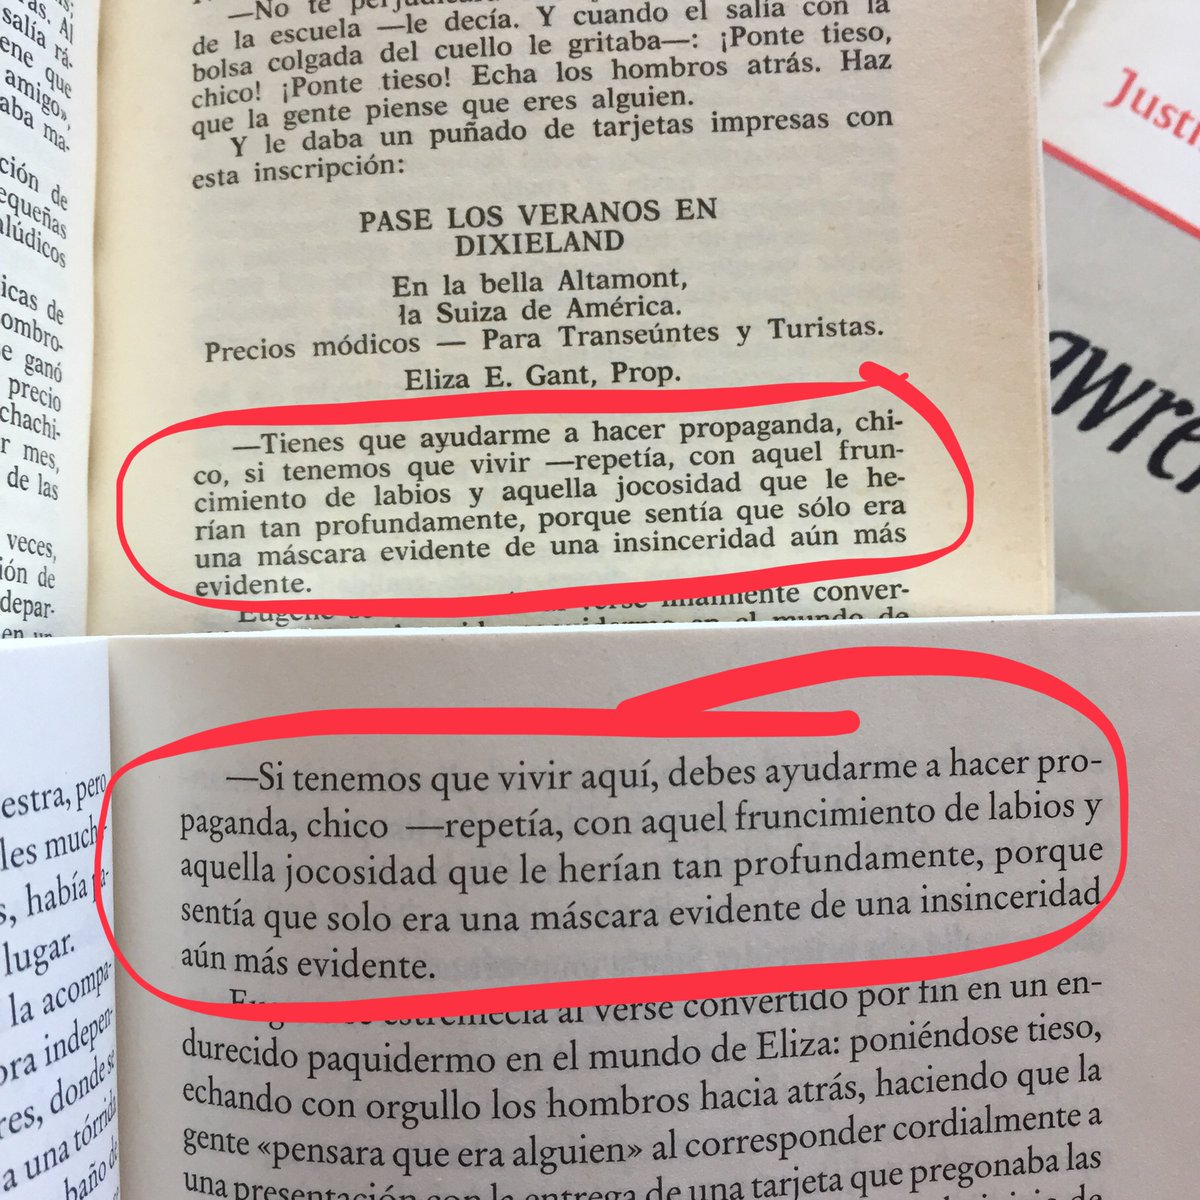 @LiberLudens La misma, la de Ferrer Aleu de 1983. En una revisión rápida esta mañana solo he localizado un pequeño retoque de esa traducción en esta reedición.